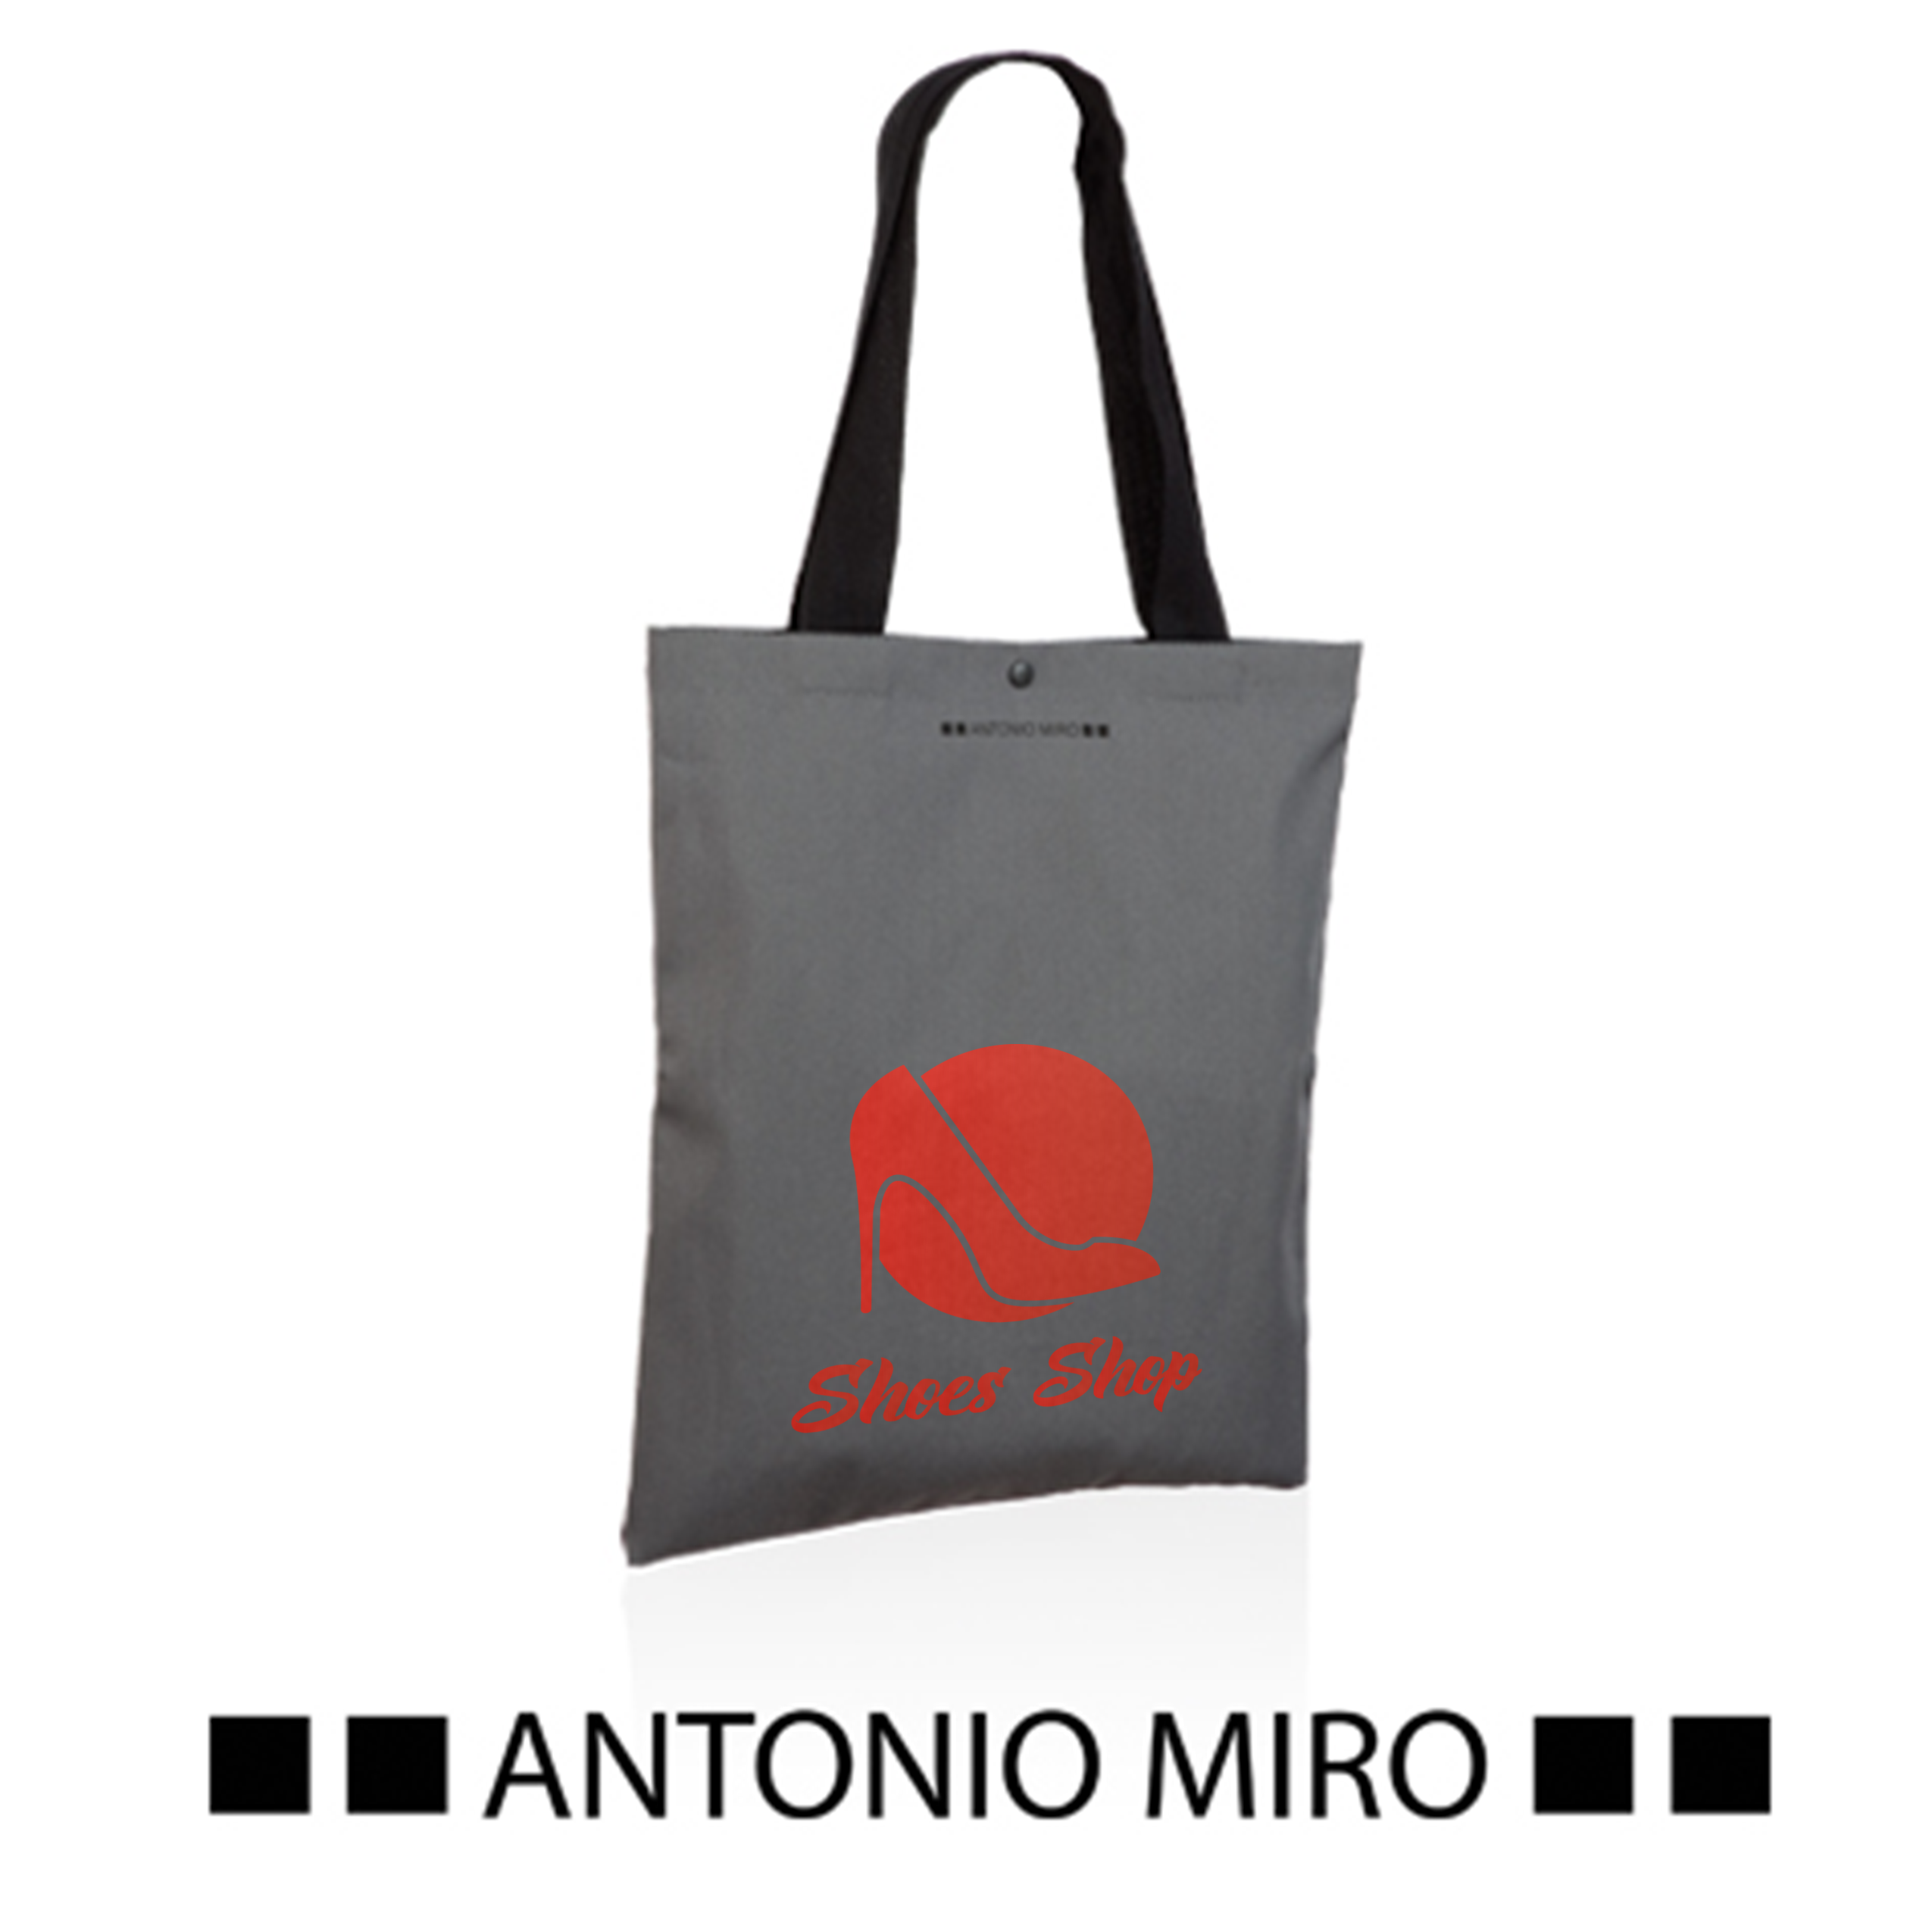 Bedruckte Einkaufstasche von Antonio Miro mit schwarzen Henkeln - Gasira